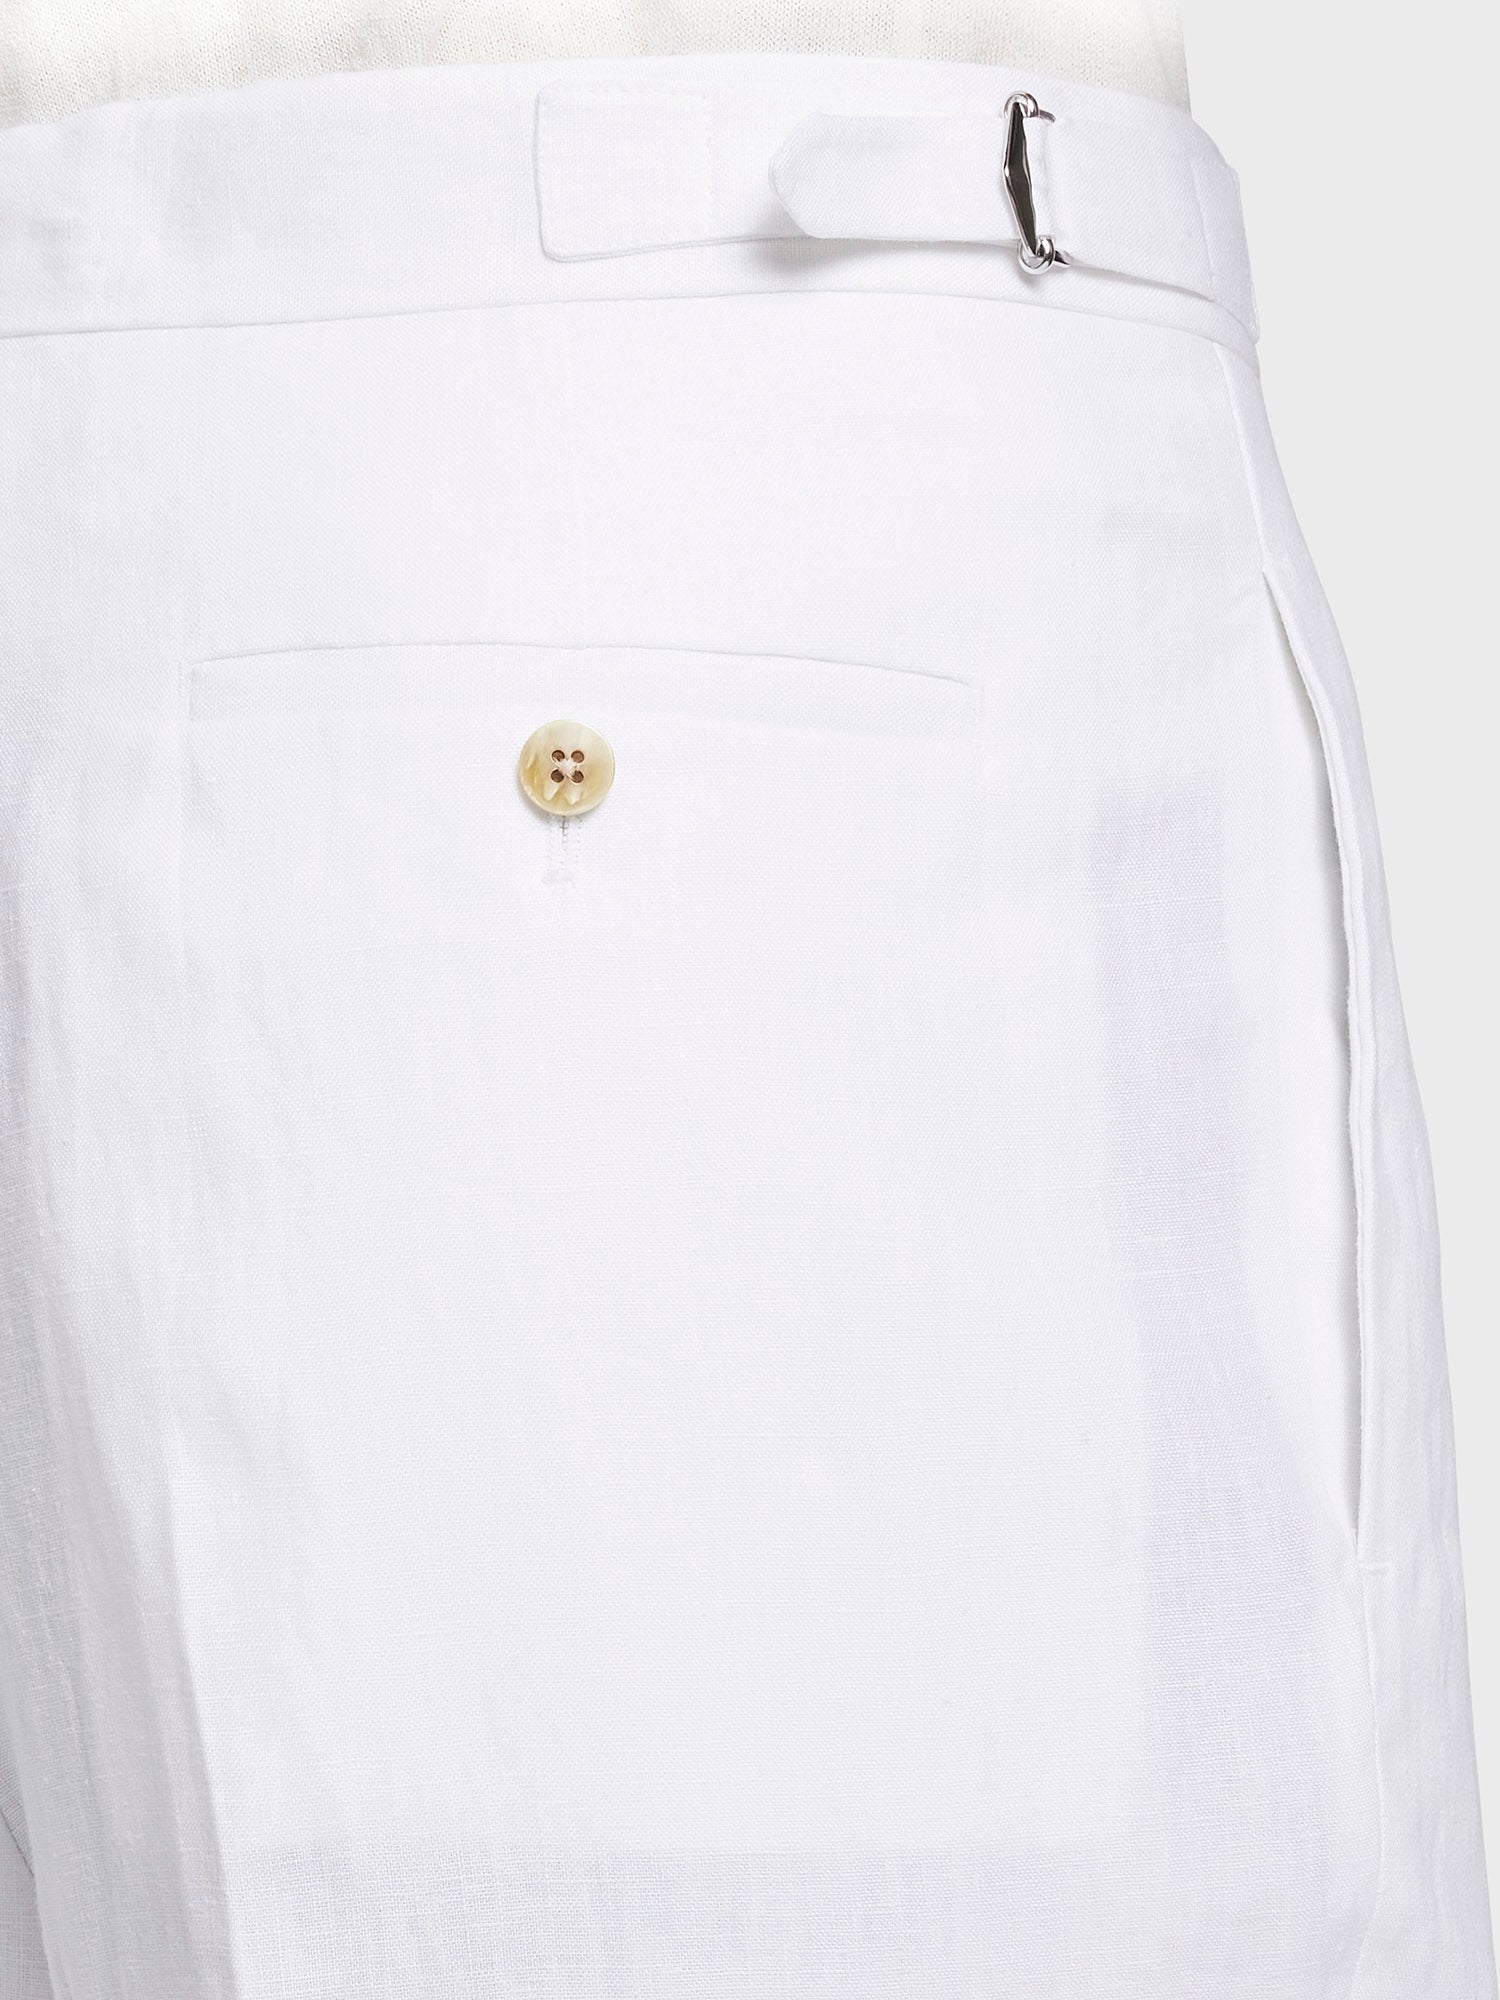 Caruso Menswear Abbigliamento Uomo Pantalone in lino bianco dettaglio